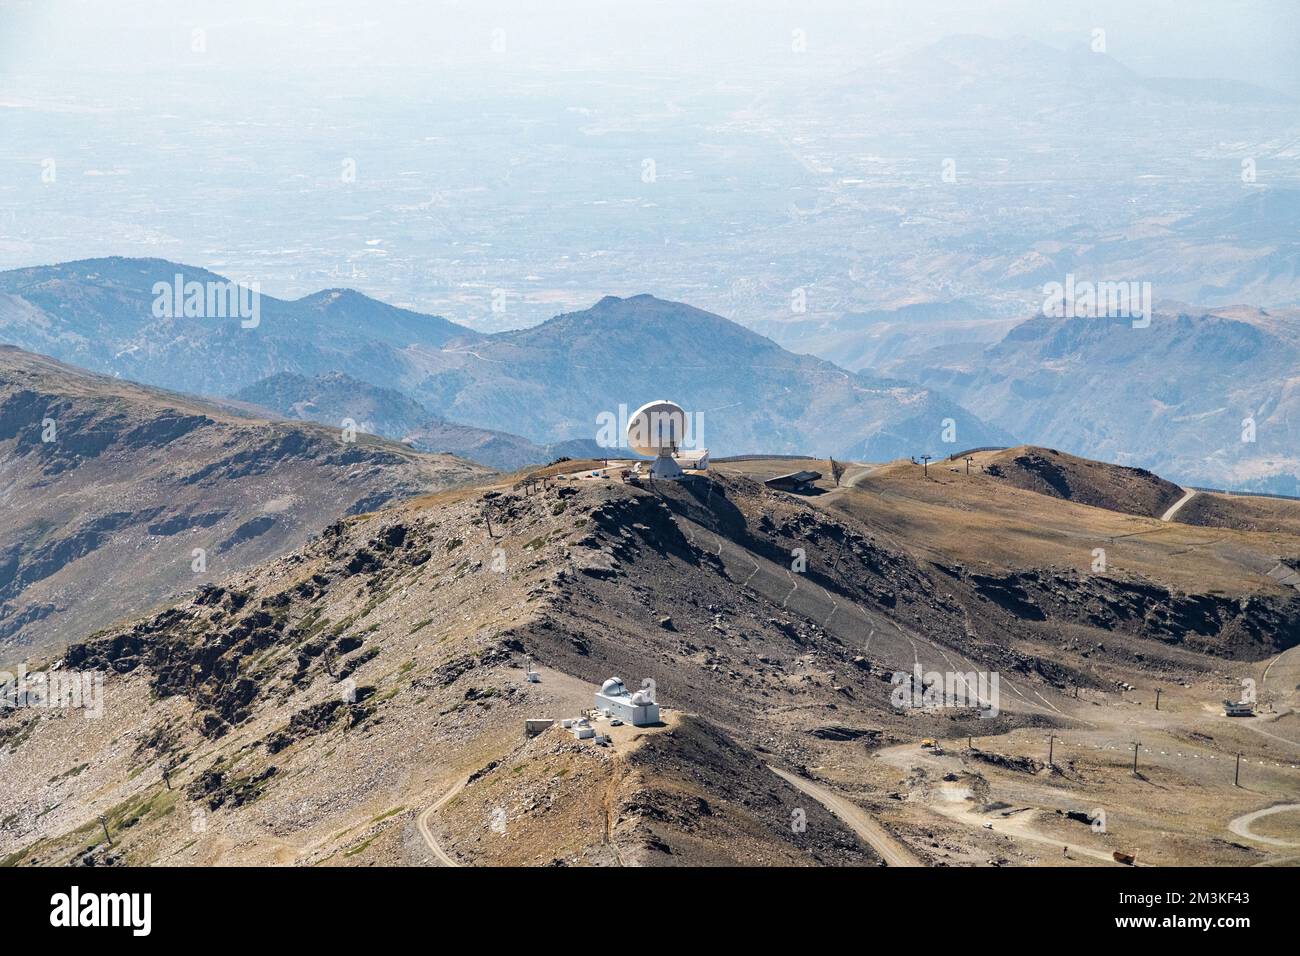 L'observatoire de Pico Veleta dans la chaîne de montagnes de la Sierra Nevada en Andalousie, Espagne Banque D'Images